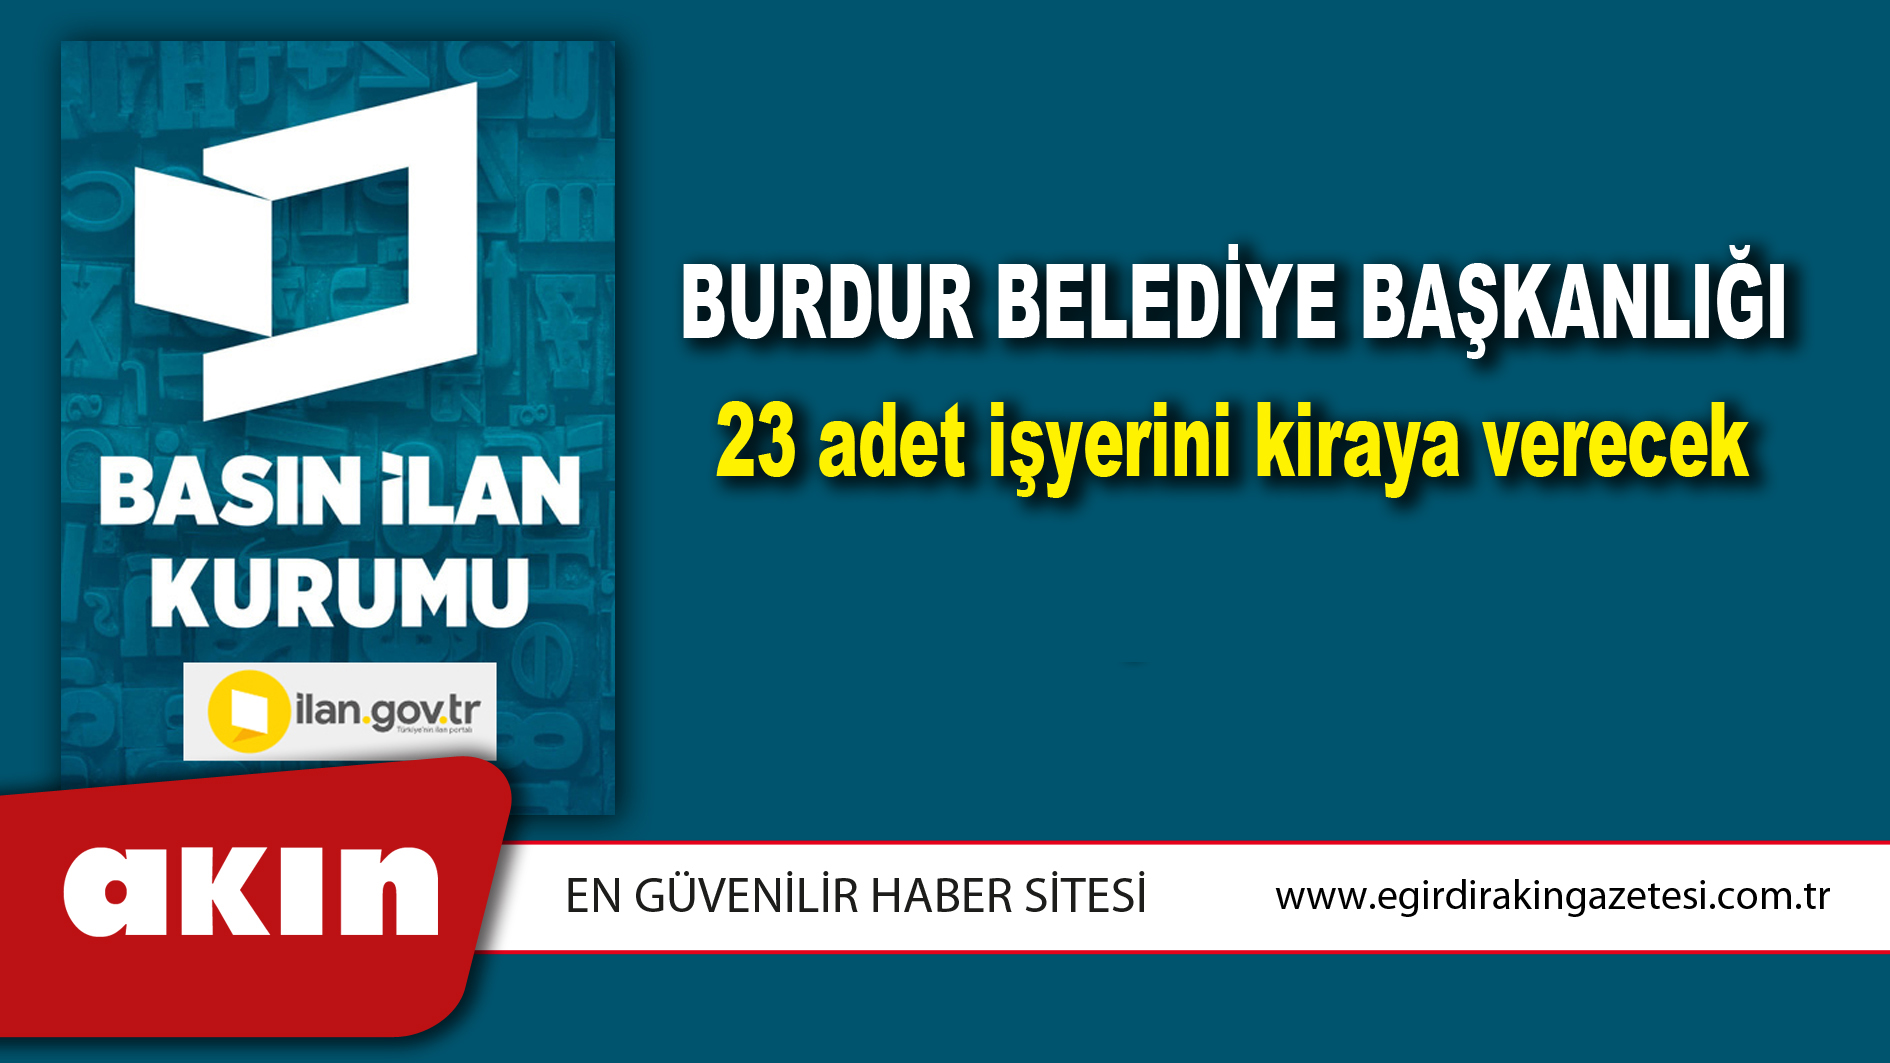 Burdur Belediye Başkanlığı 23 adet işyerini kiraya verecek